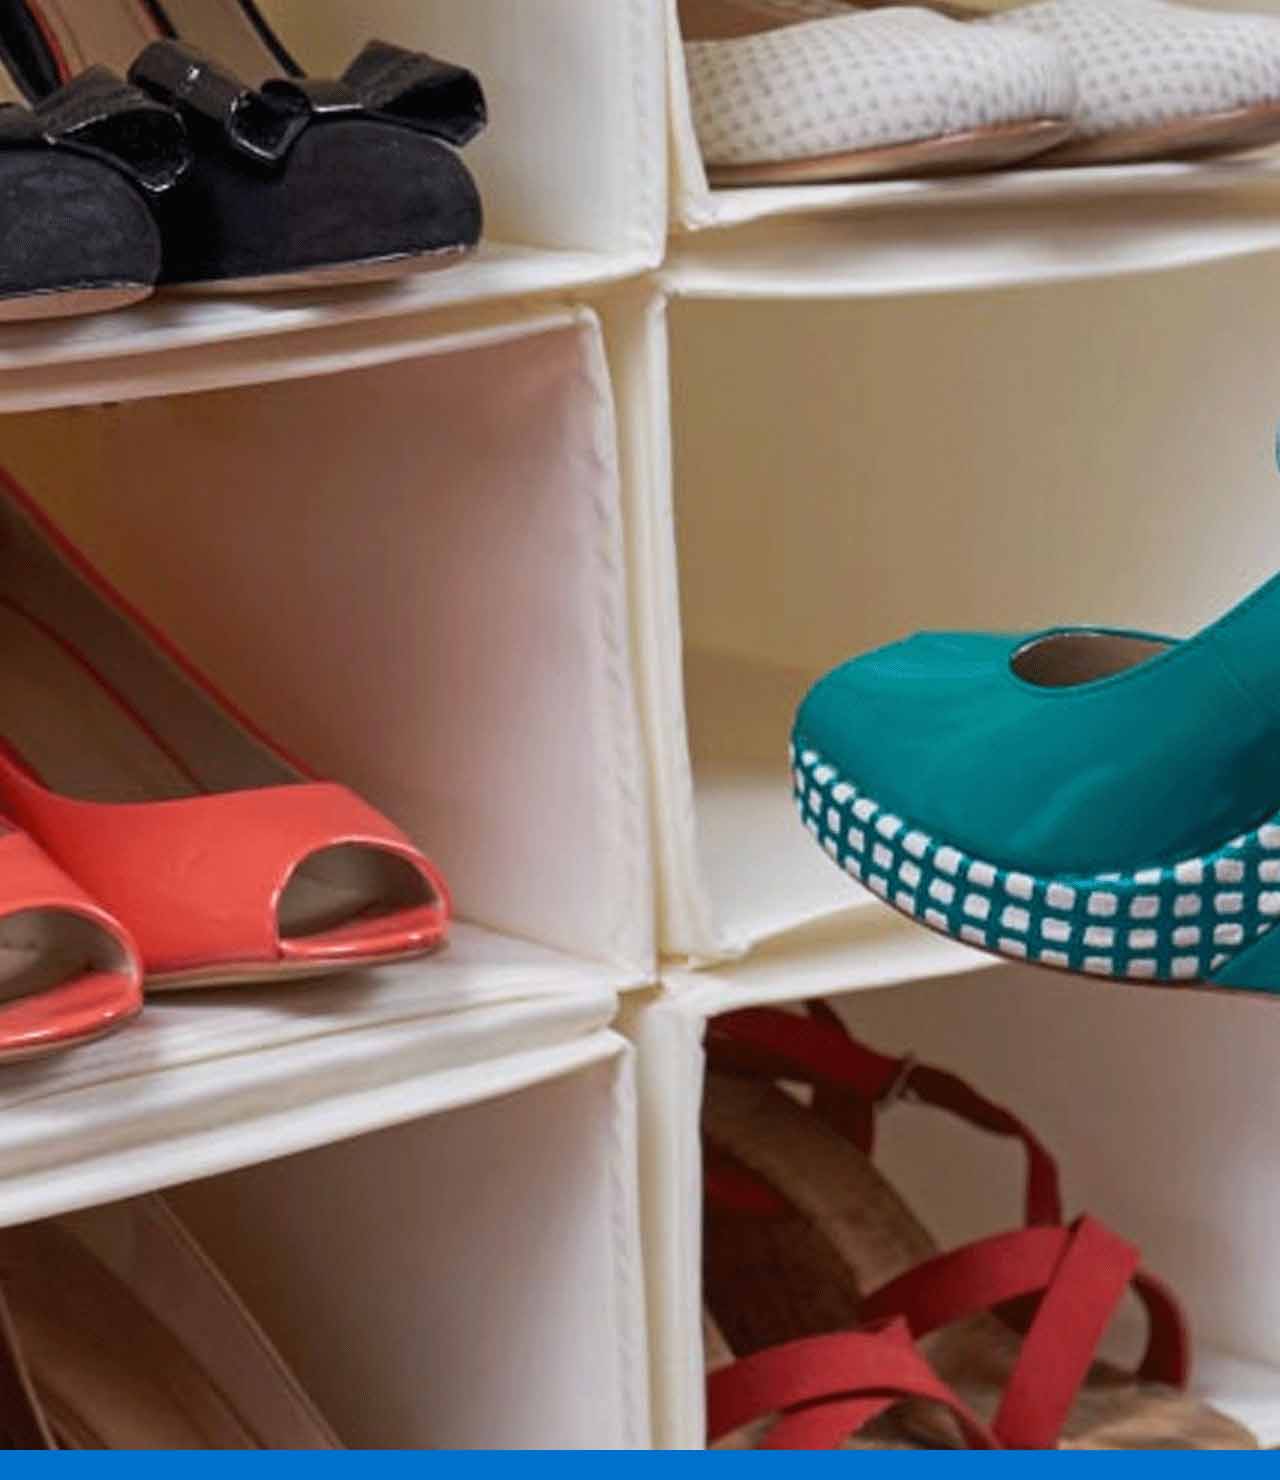 Descubre diferentes maneras de cómo organizar zapatos en espacios